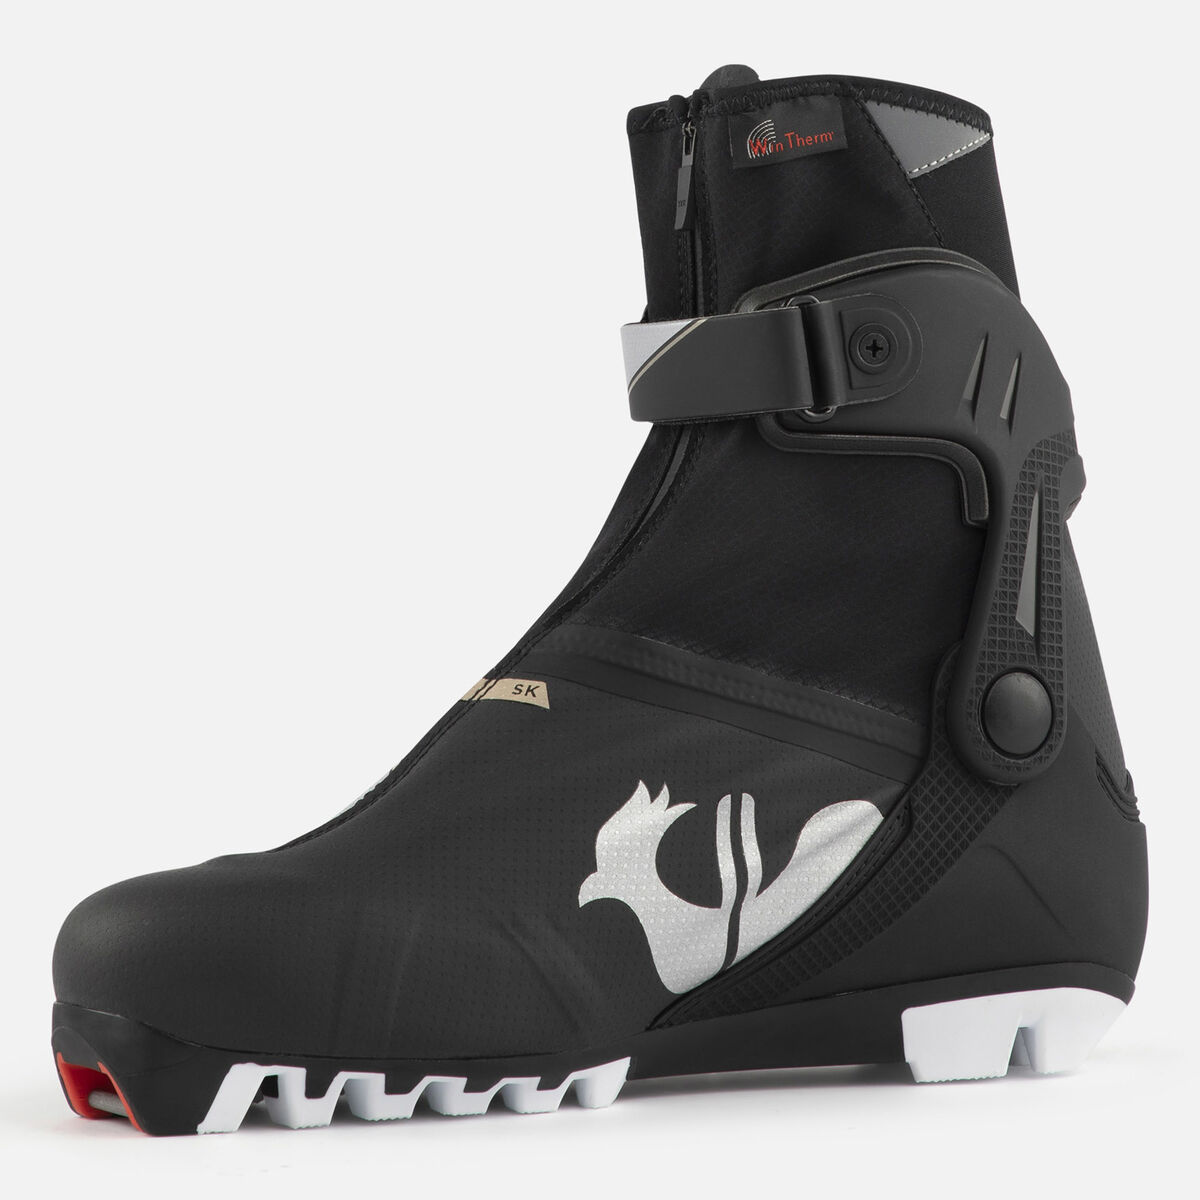 Chaussures de ski nordique Racing Femme X-10 Skate